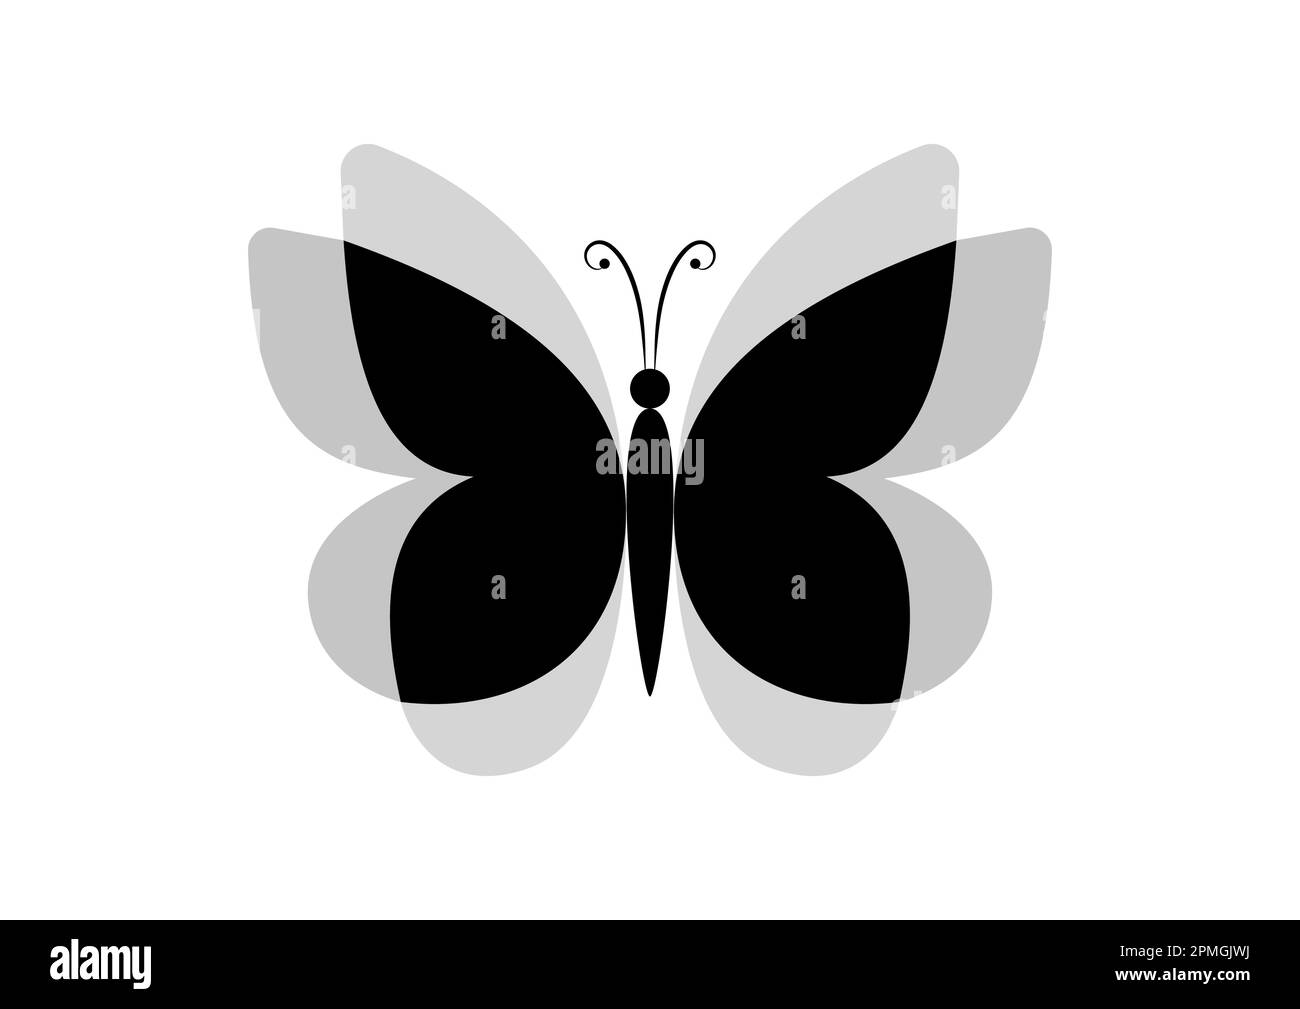 Illusion optique de l'icône papillon noir Illustration vectorielle isolée sur fond blanc Illustration de Vecteur